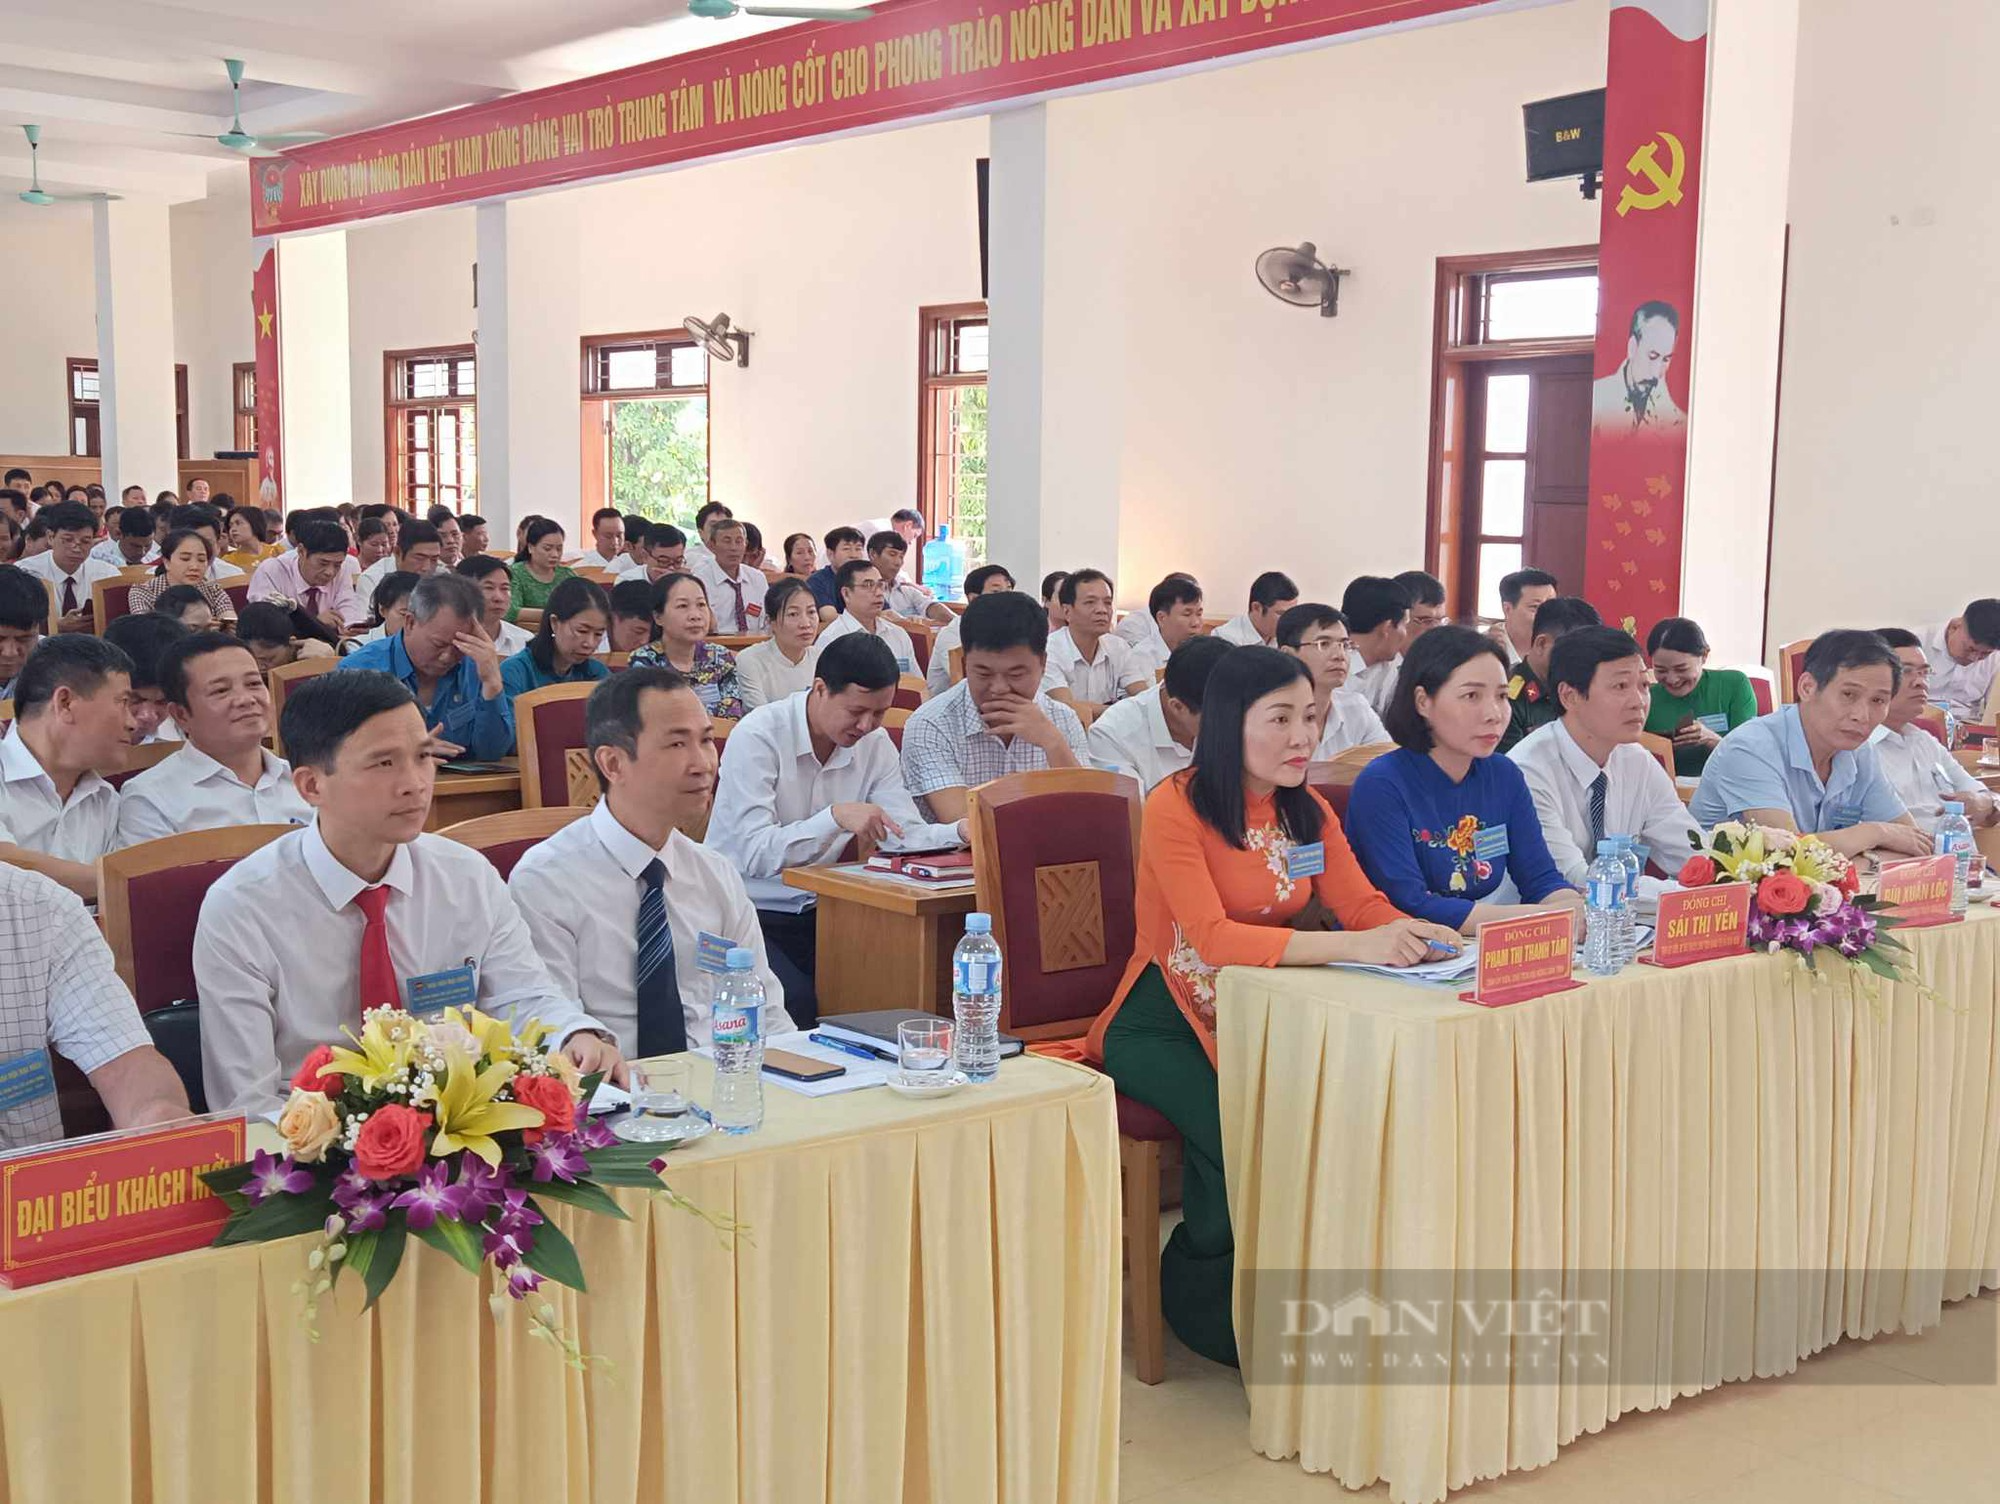 Hải Dương: Đại hội đại biểu Hội Nông dân thị xã Kinh Môn, ông Hoàng Minh Côi tái đắc cử Chủ tịch Hội - Ảnh 3.